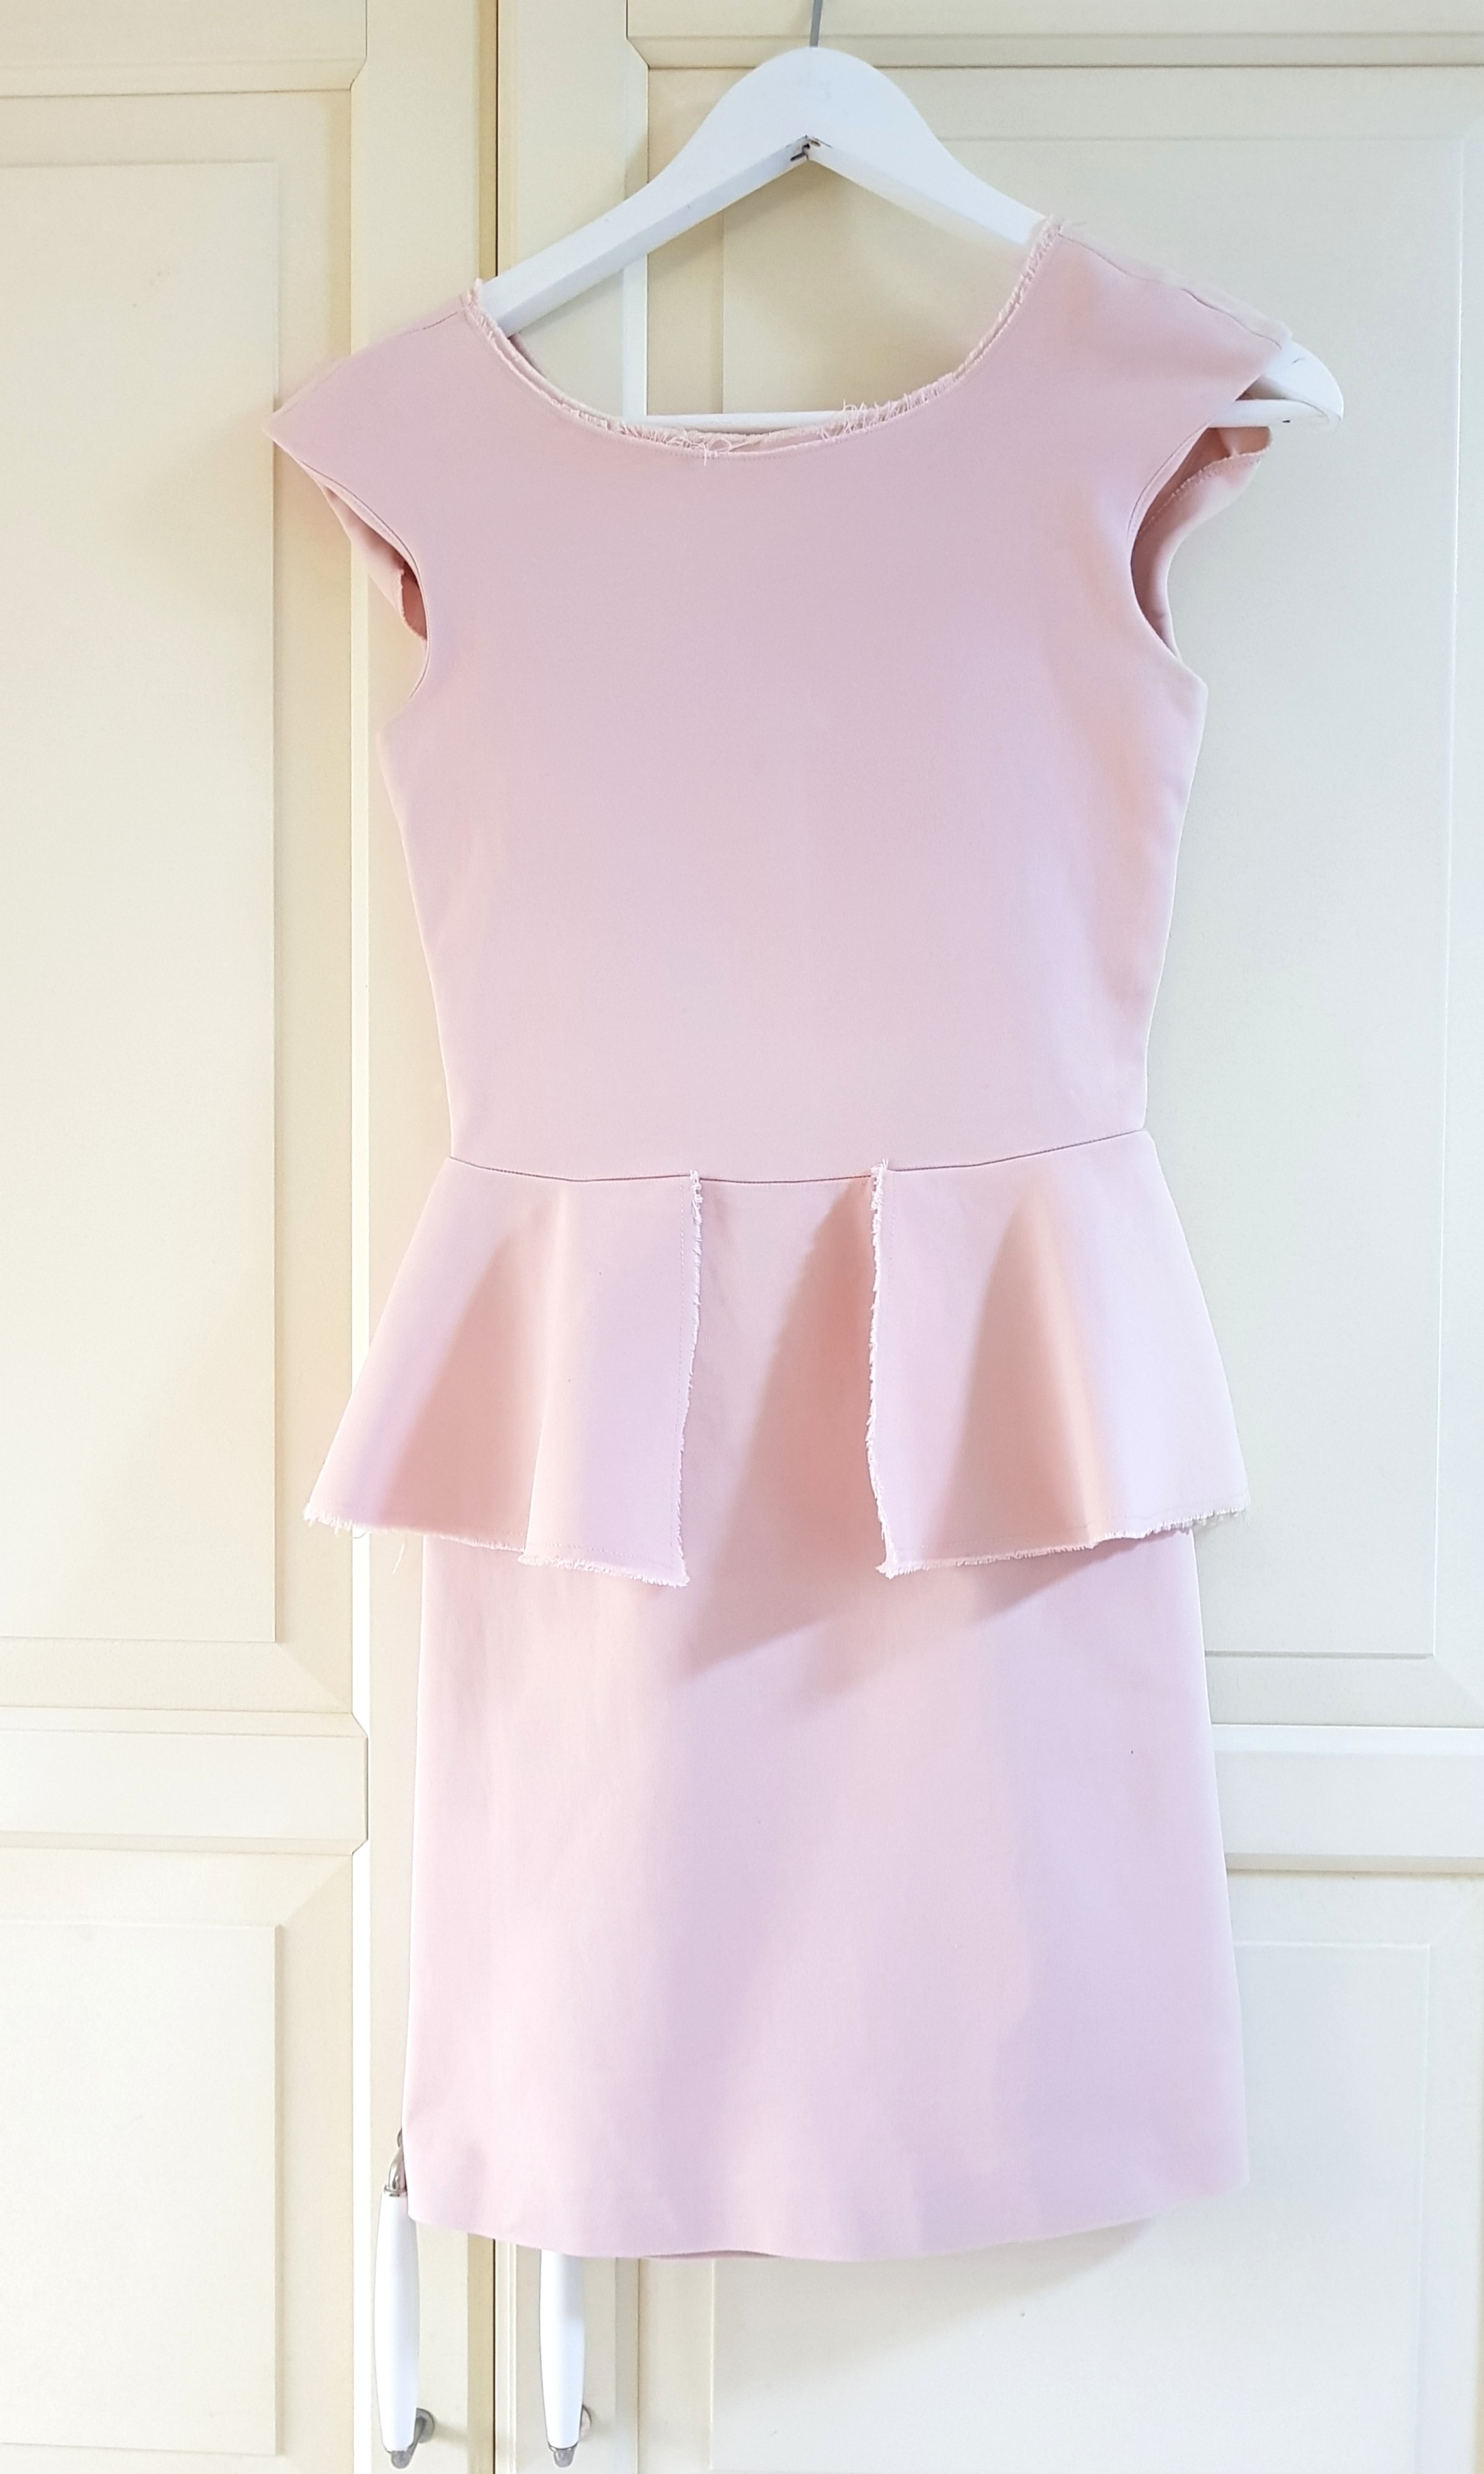 zara light pink dress